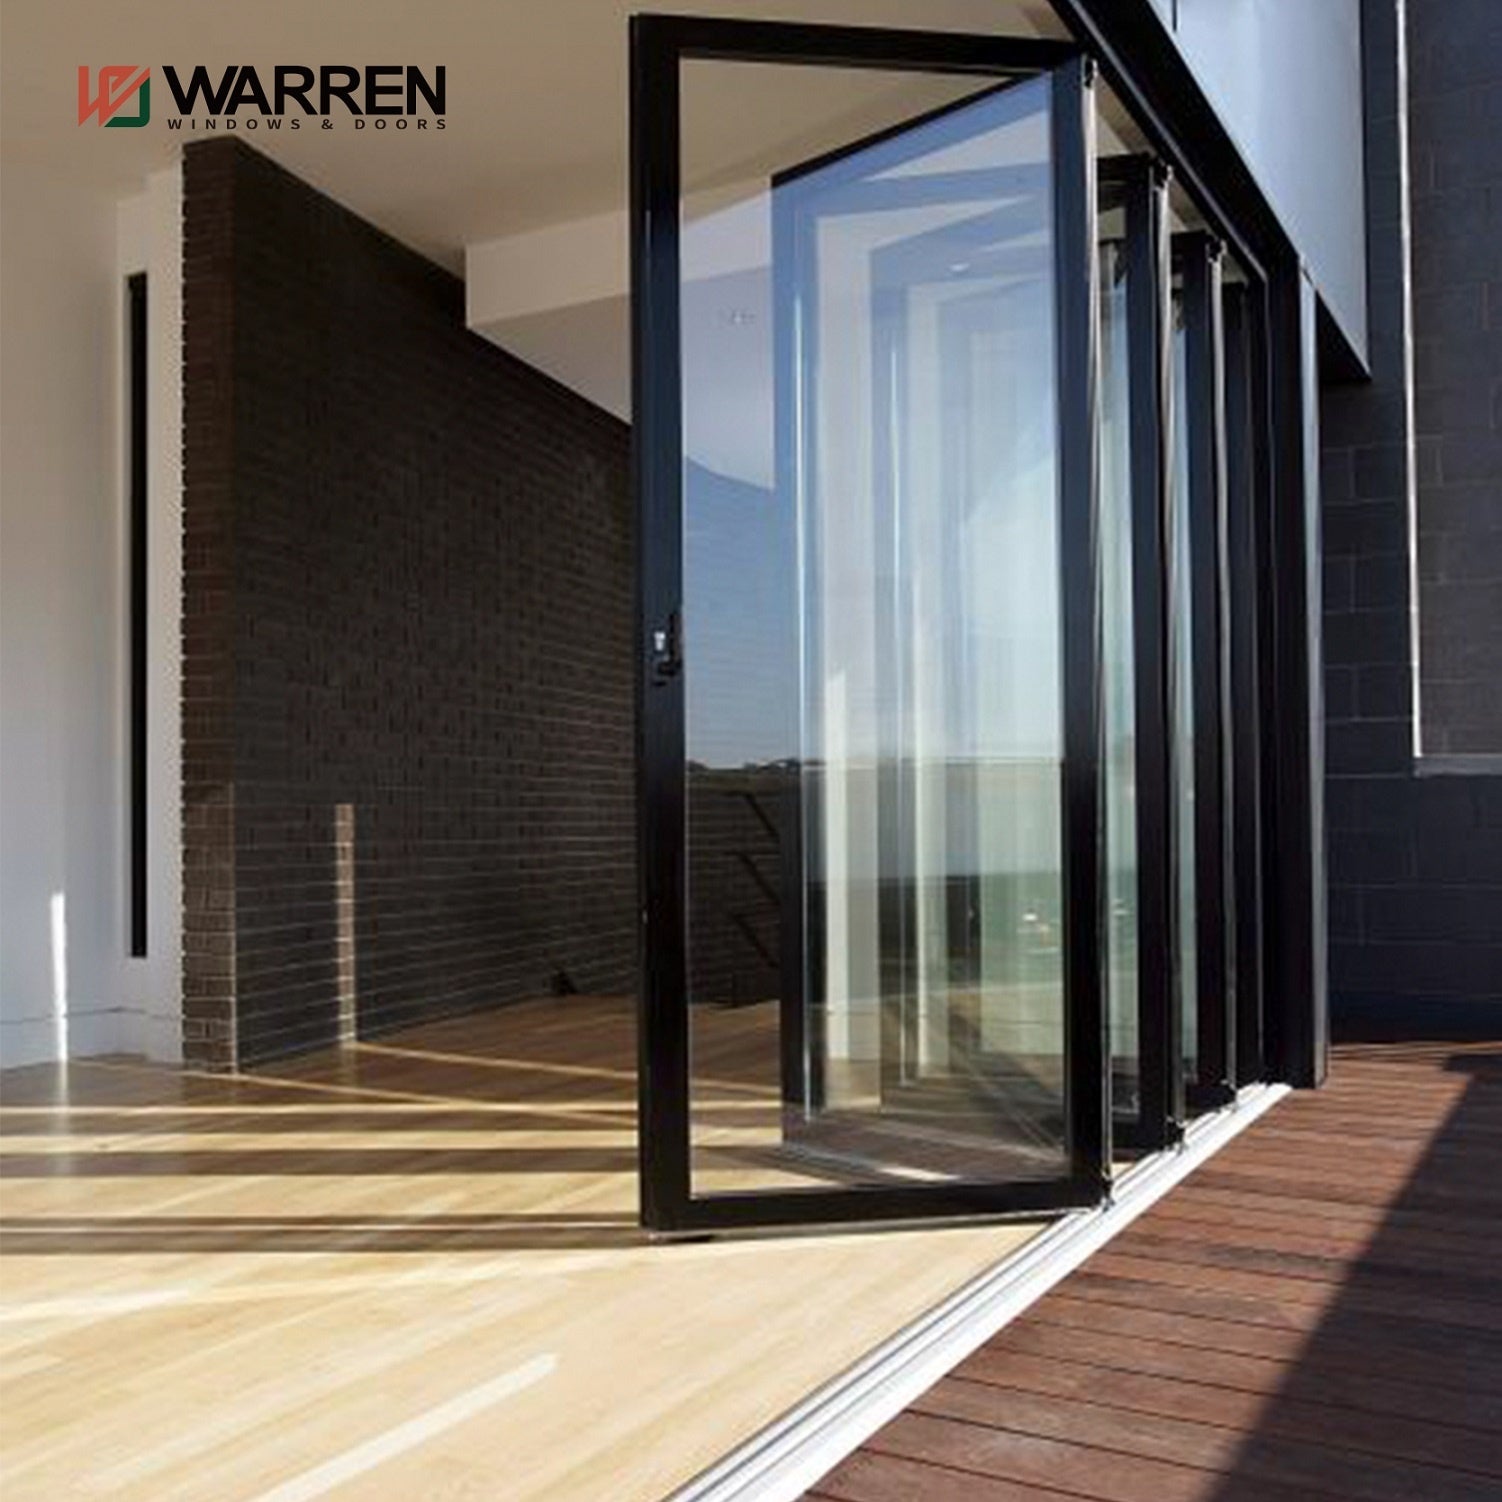 Warren Top 10 Bulk doors aluminium profile folding door exterior slide folding glass door for sale